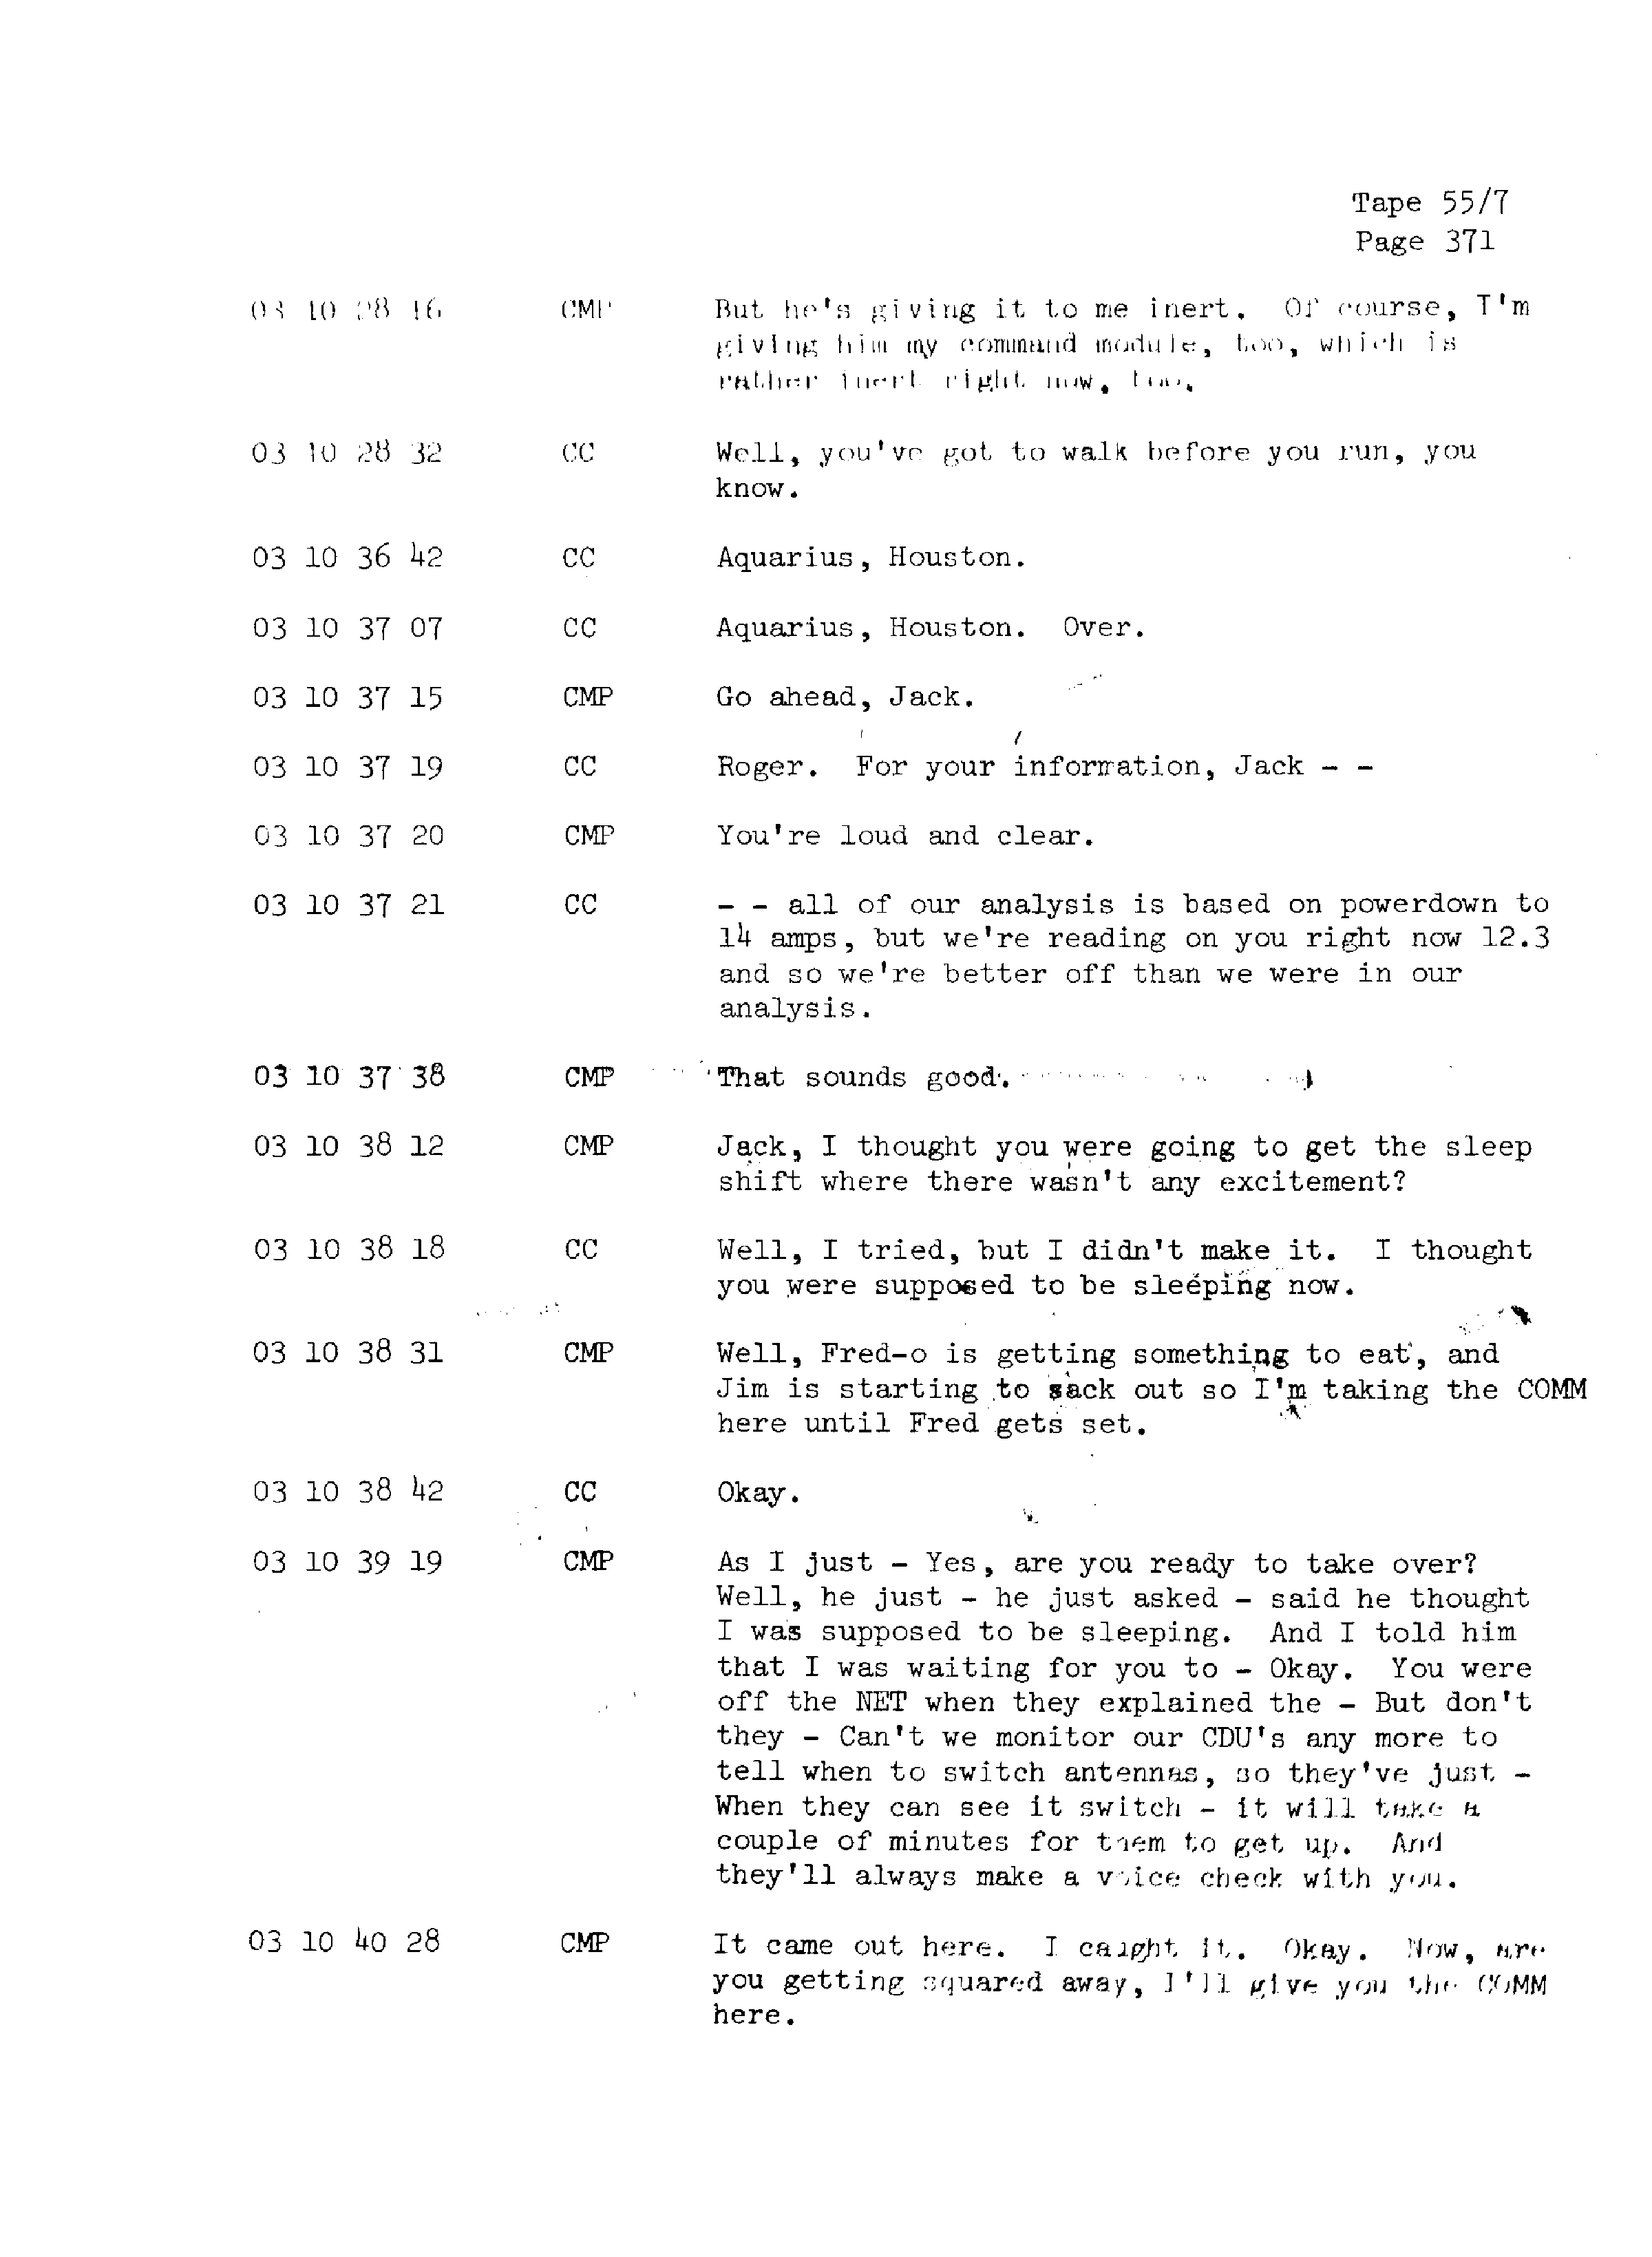 Page 378 of Apollo 13’s original transcript